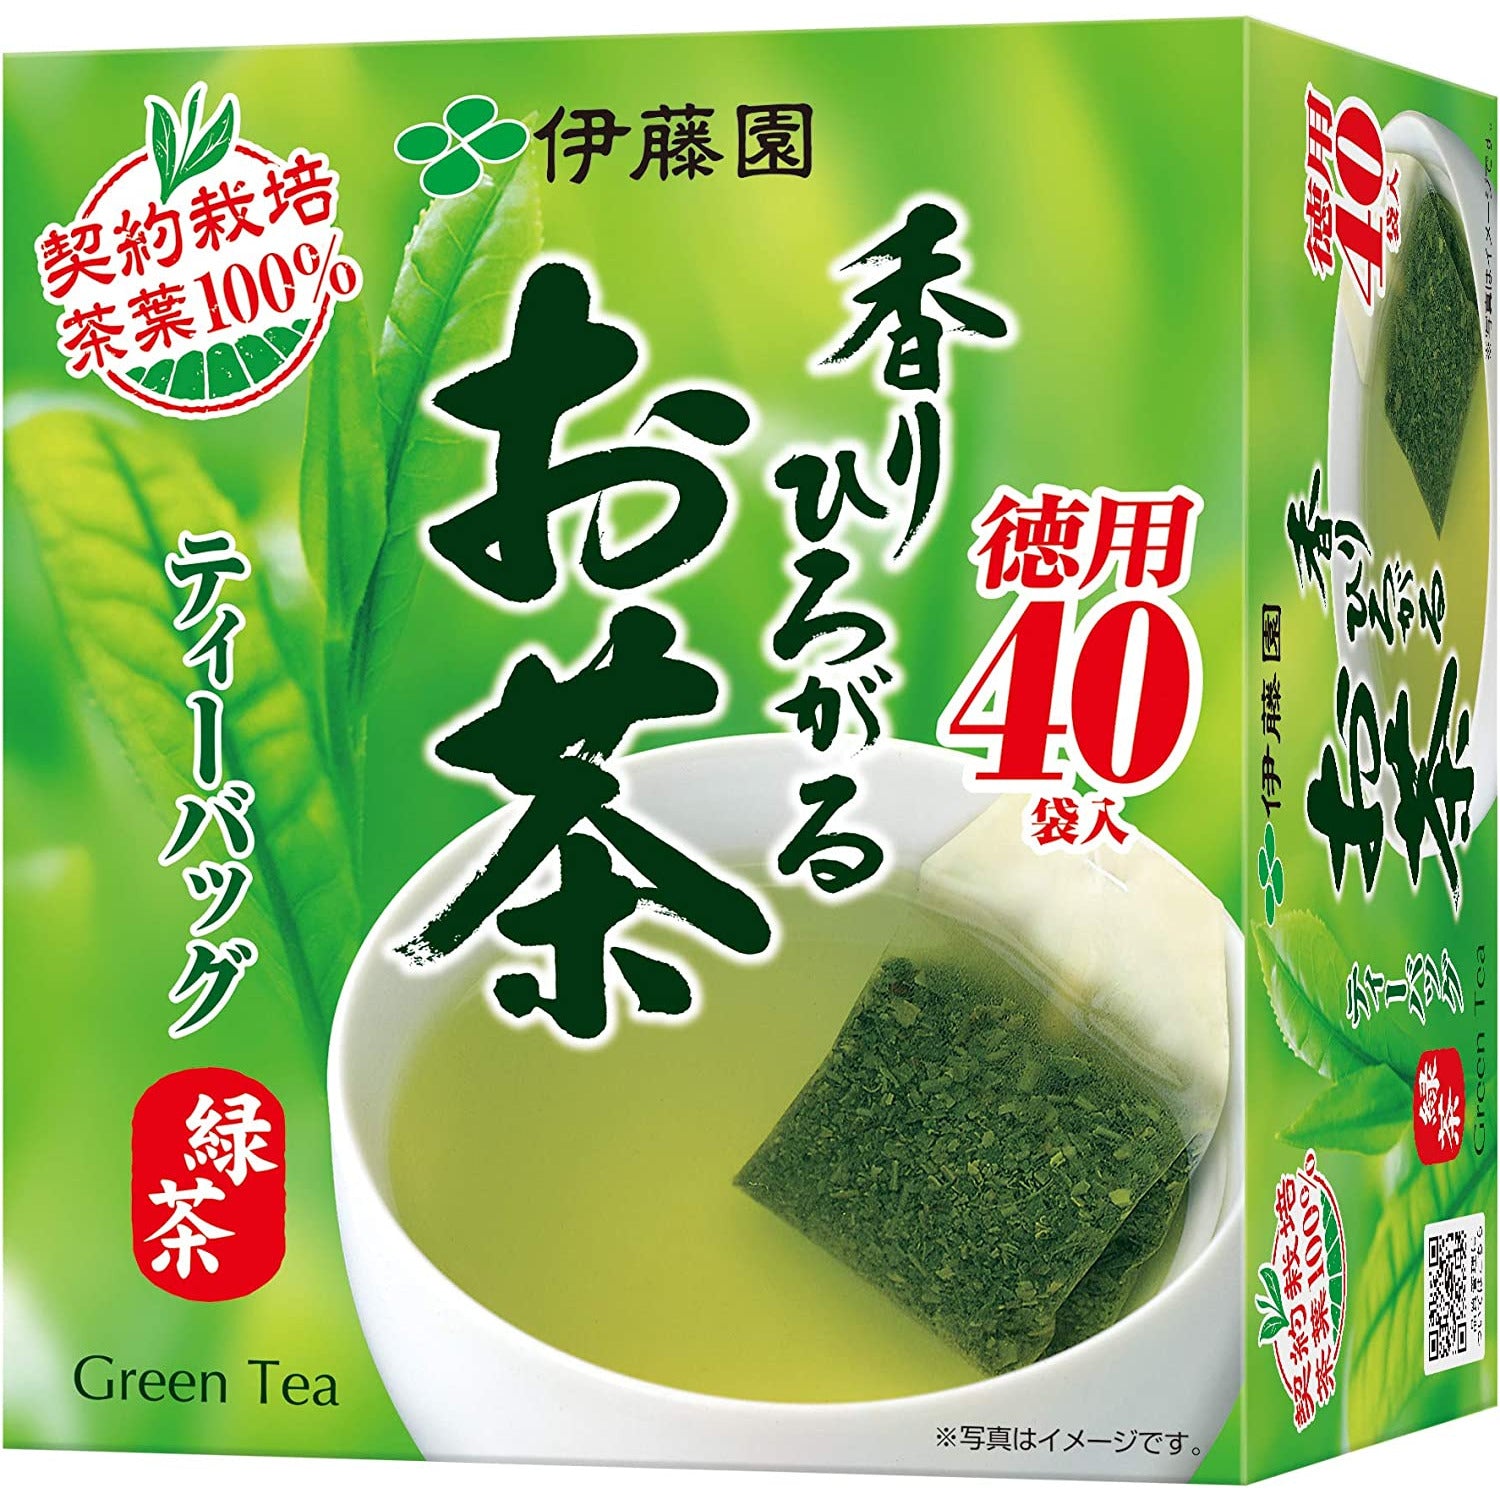 Itoen Fragrant green tea green tea bag 2.0g x 40 bags